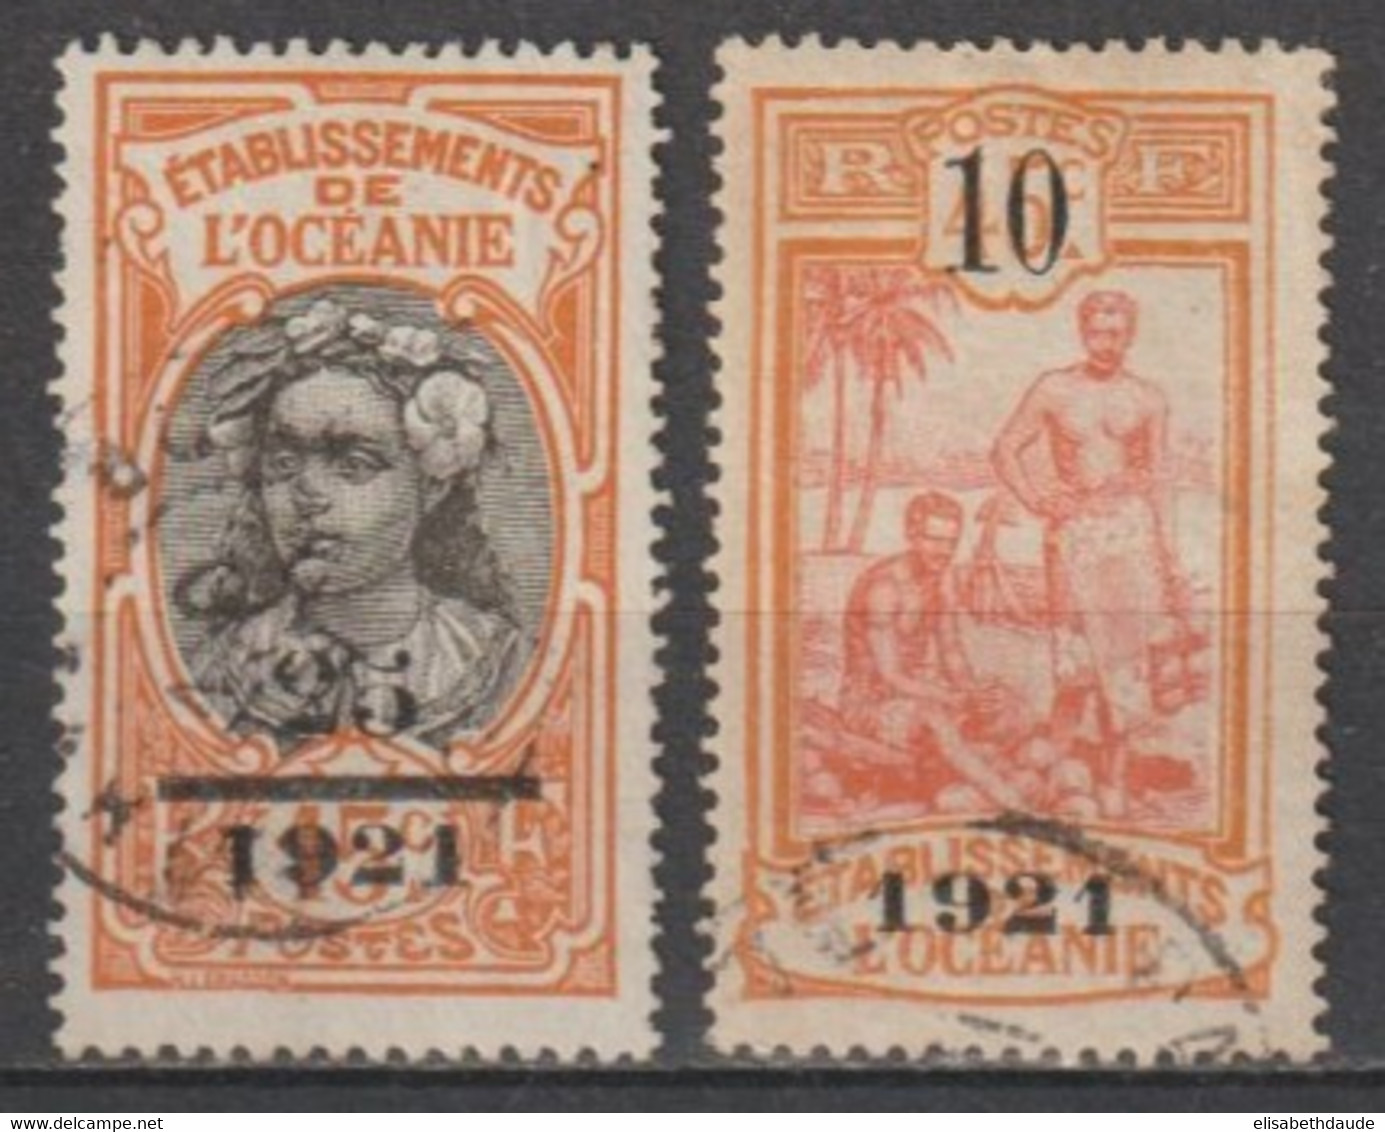 OCEANIE - 1921 - YVERT N°45/46 OBLITERES - COTE = 90 EUR - Used Stamps